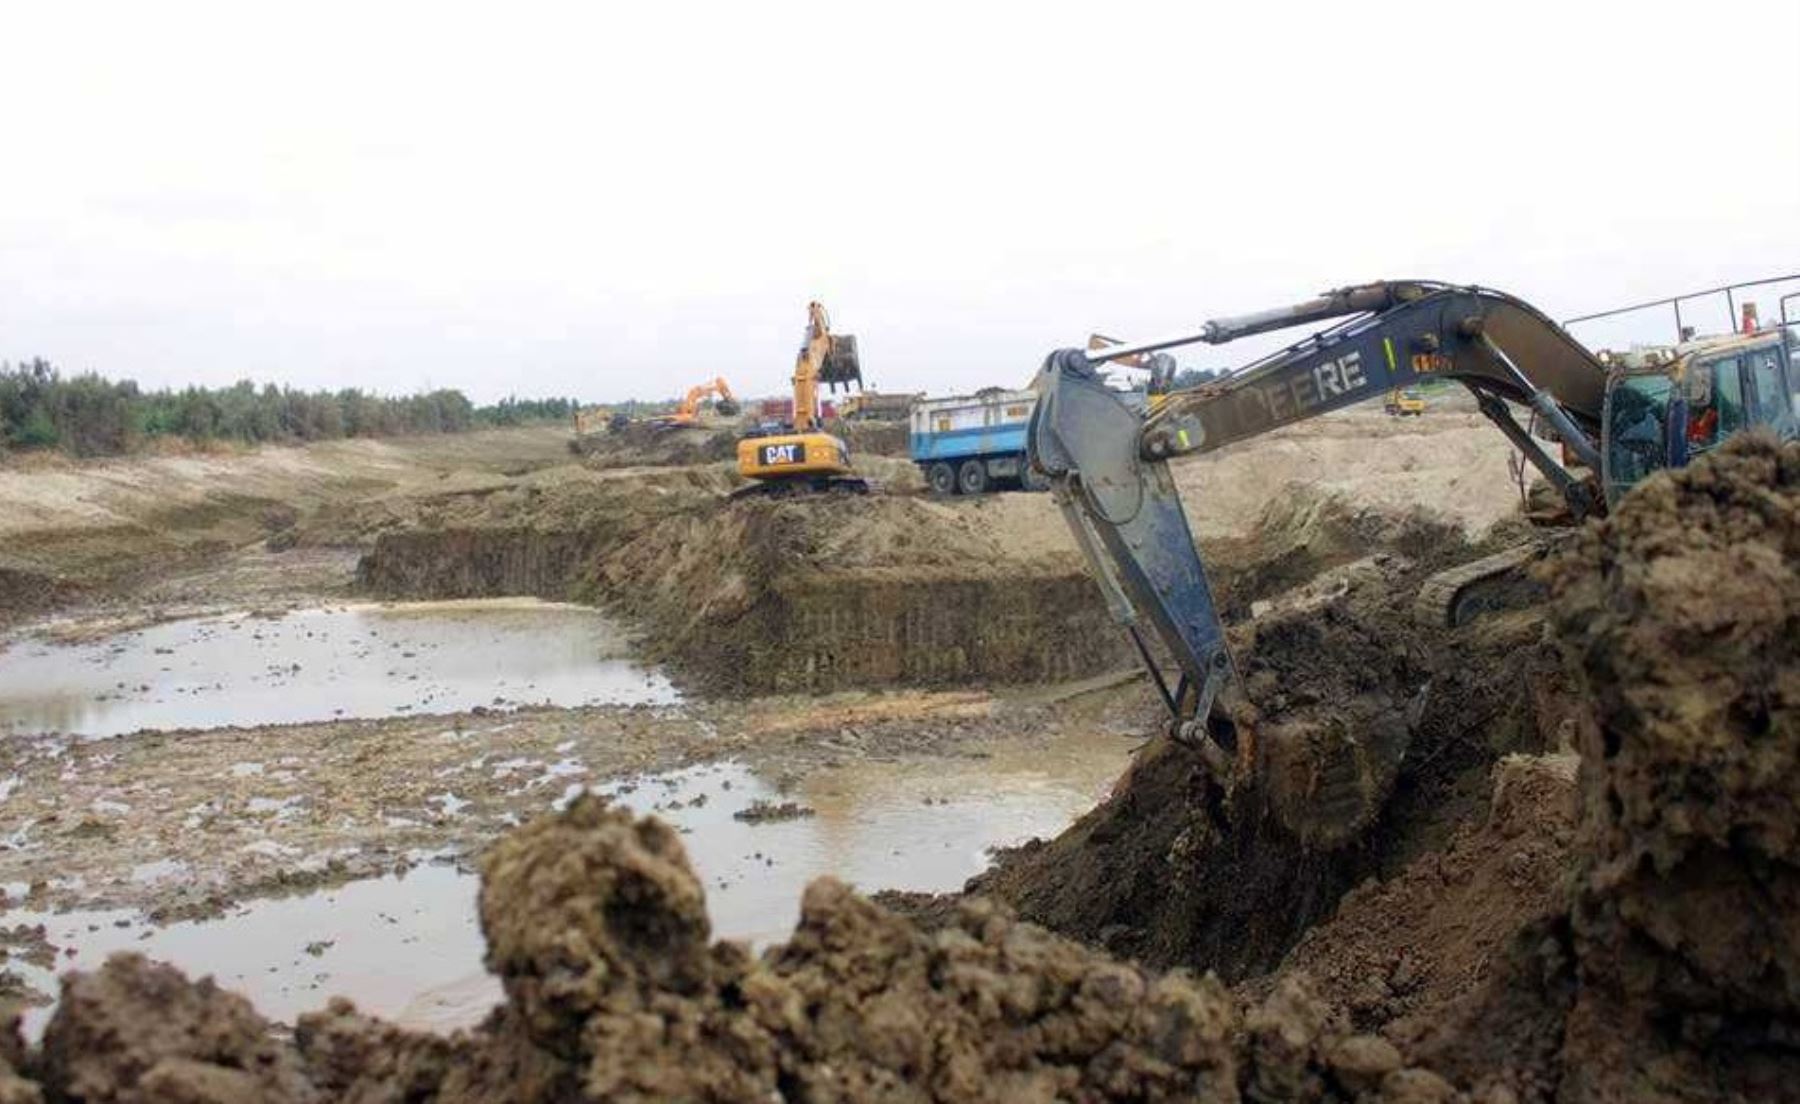 Las labores de limpieza y encauzamiento en el río Chira ascienden a 31%, en el marco del proceso de Reconstrucción con Cambios, informó el Ministerio de Agricultura y Riego (Minagri).